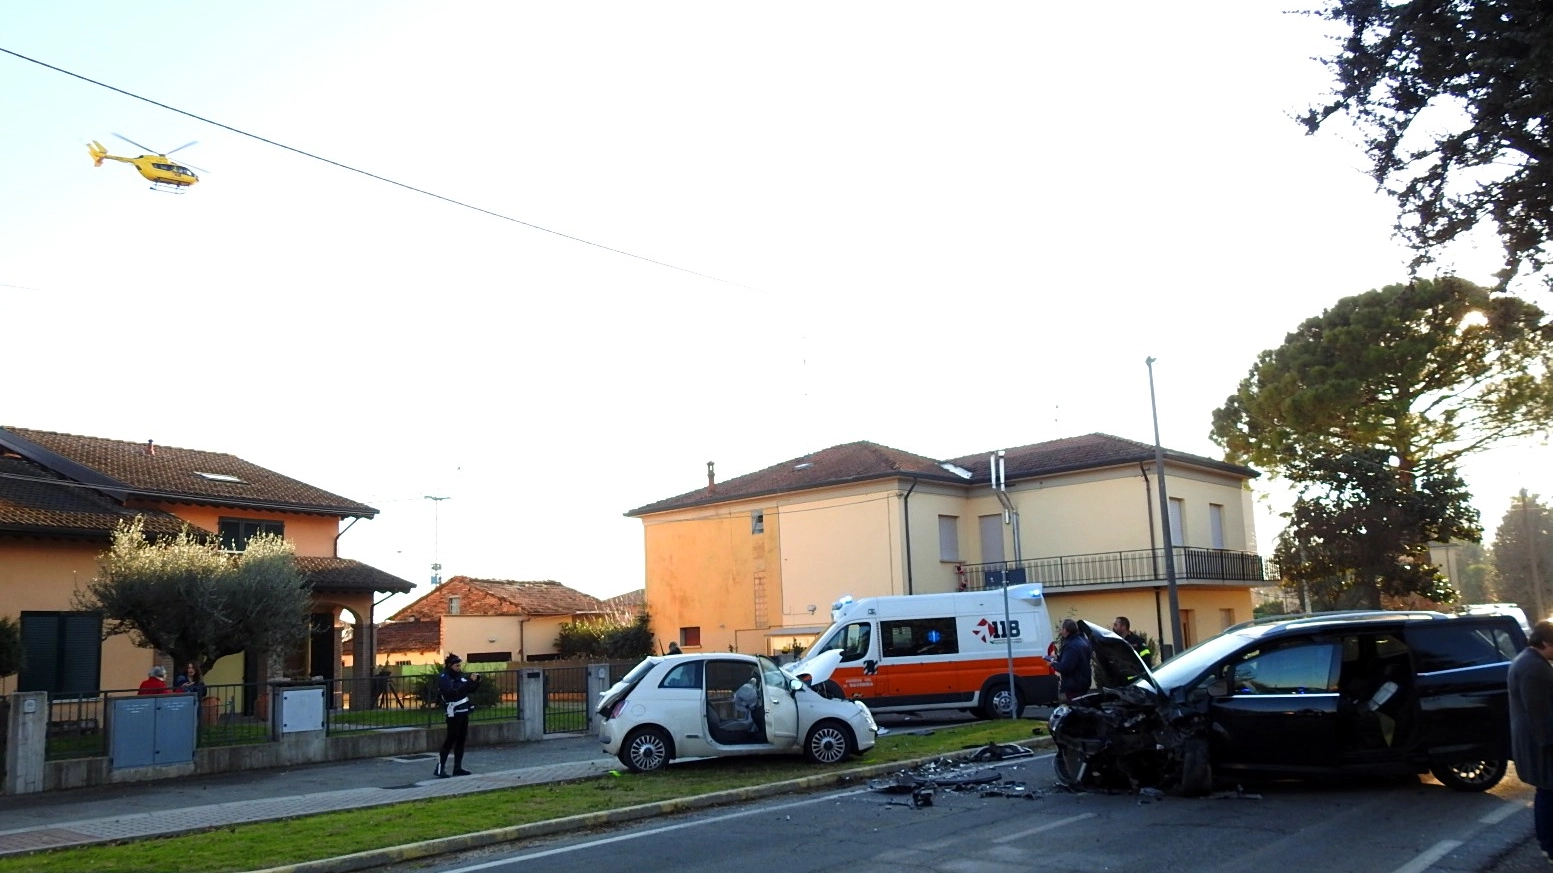 Il pauroso incidente è avvenuto a San Lorenzo di Lugo (Scardovi)